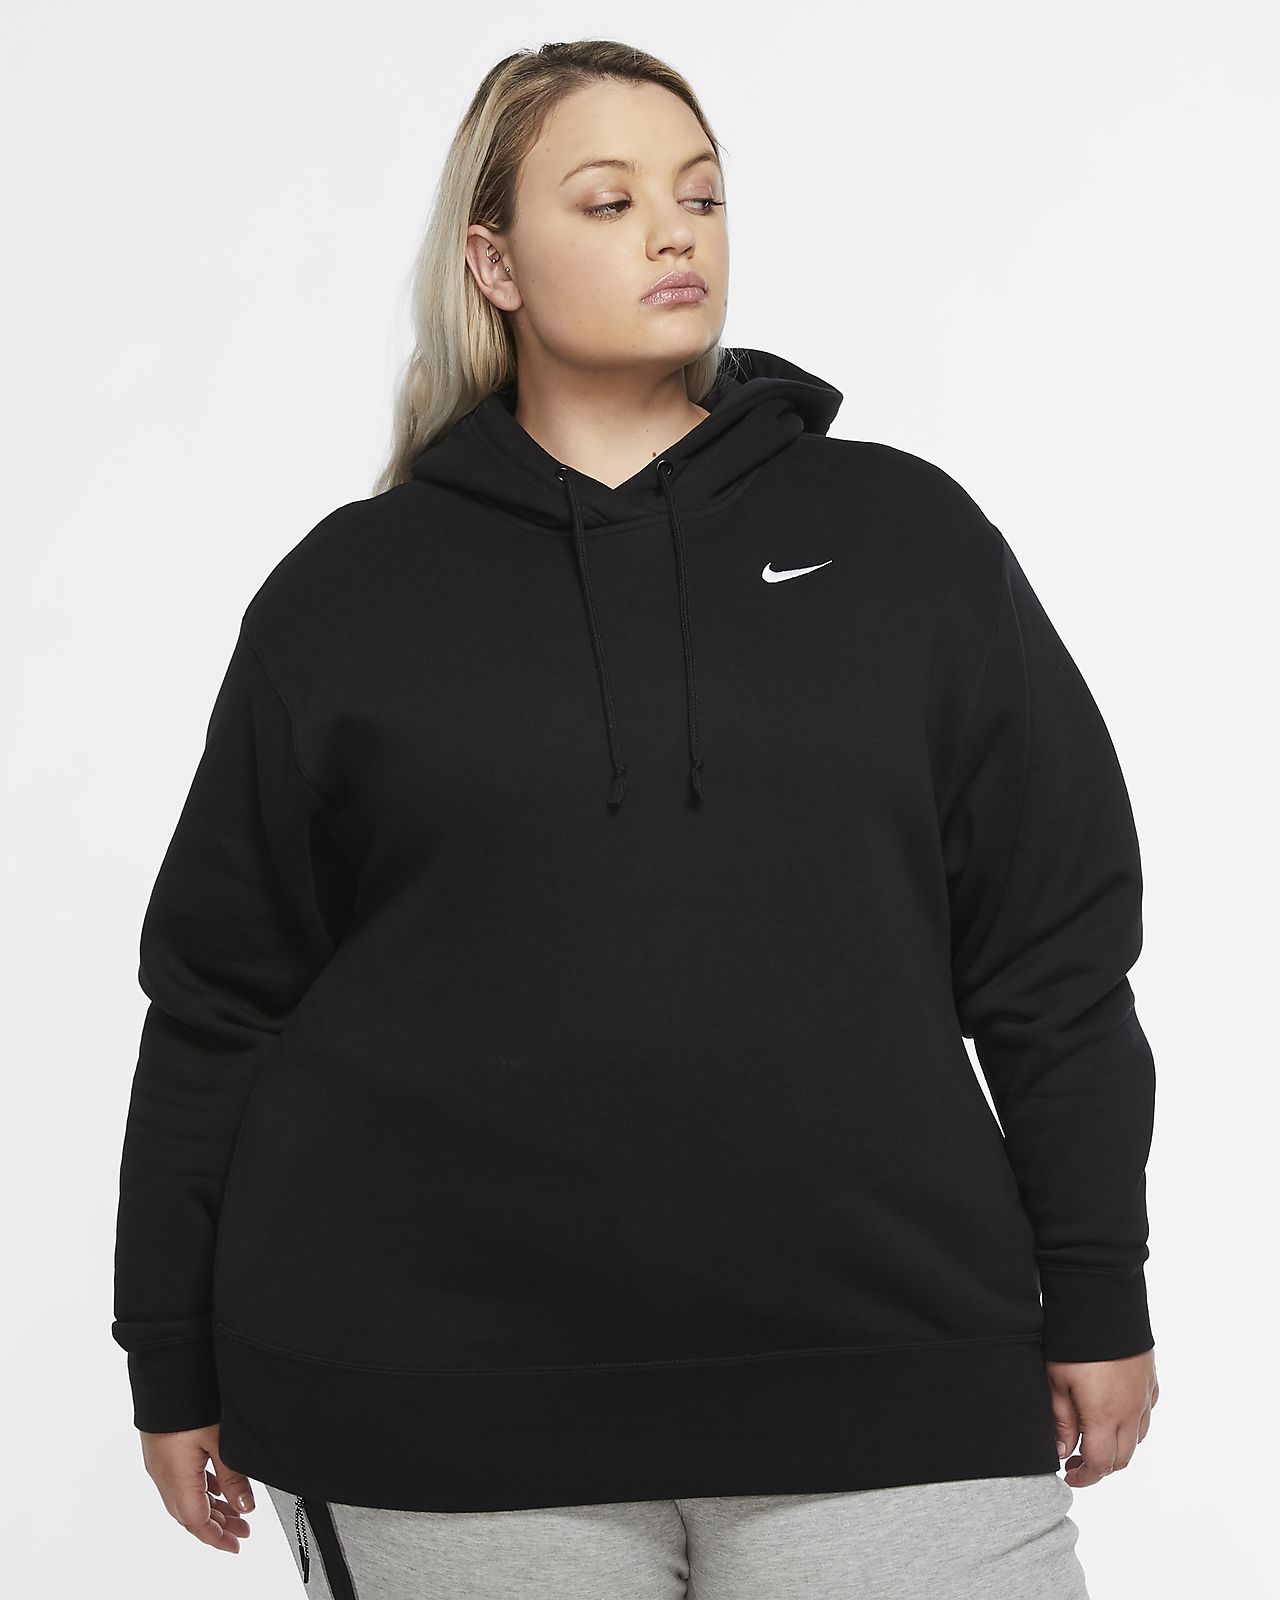 Nike Pullover Für Damen